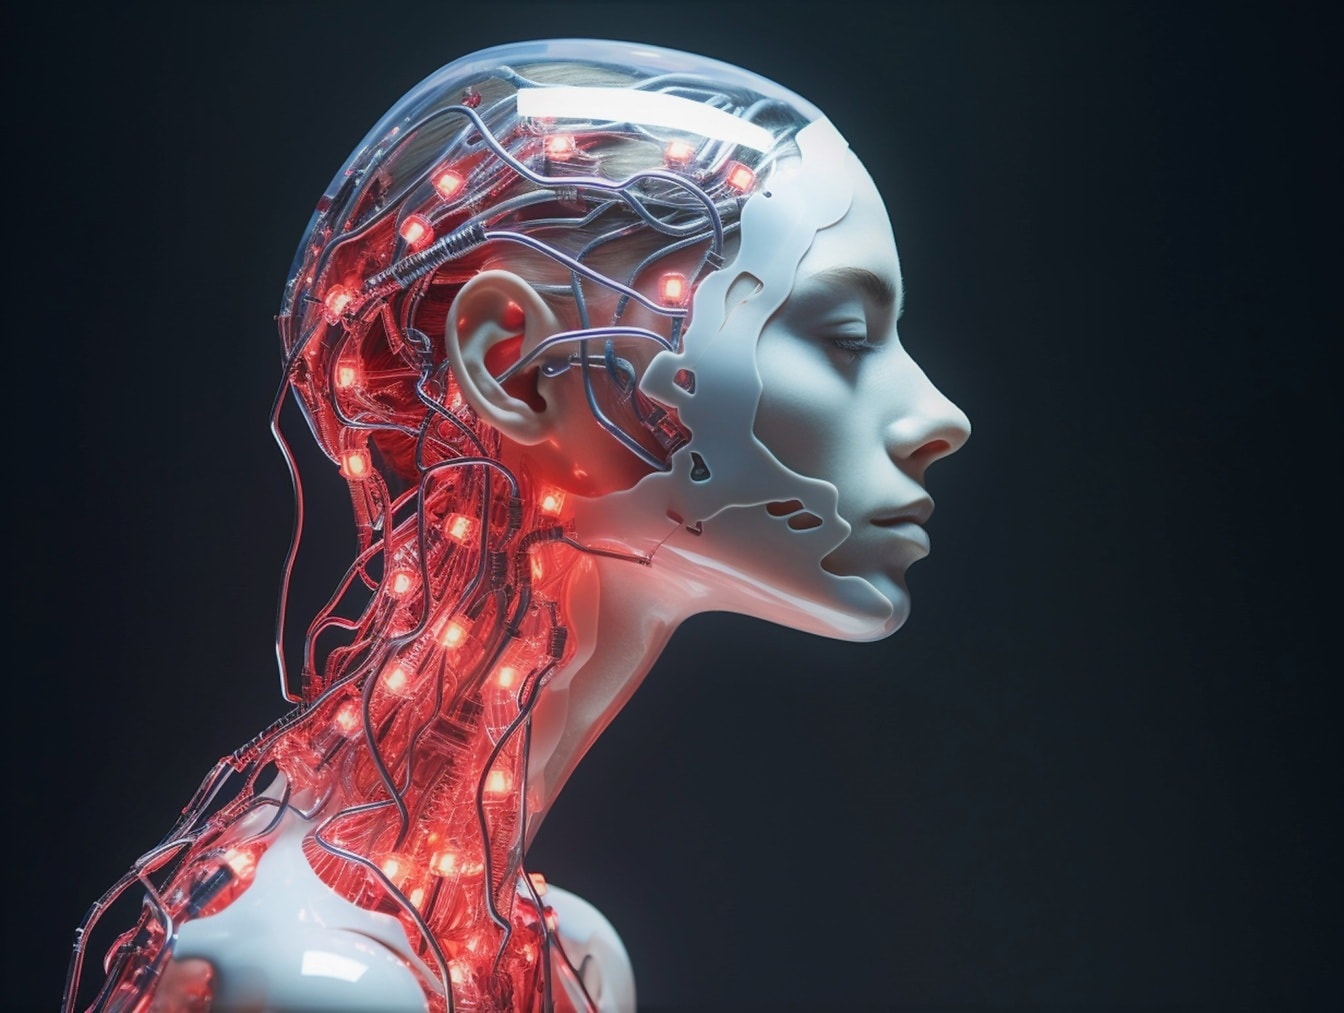 Humanoider Cyborg-Roboter mit künstlicher Intelligenz